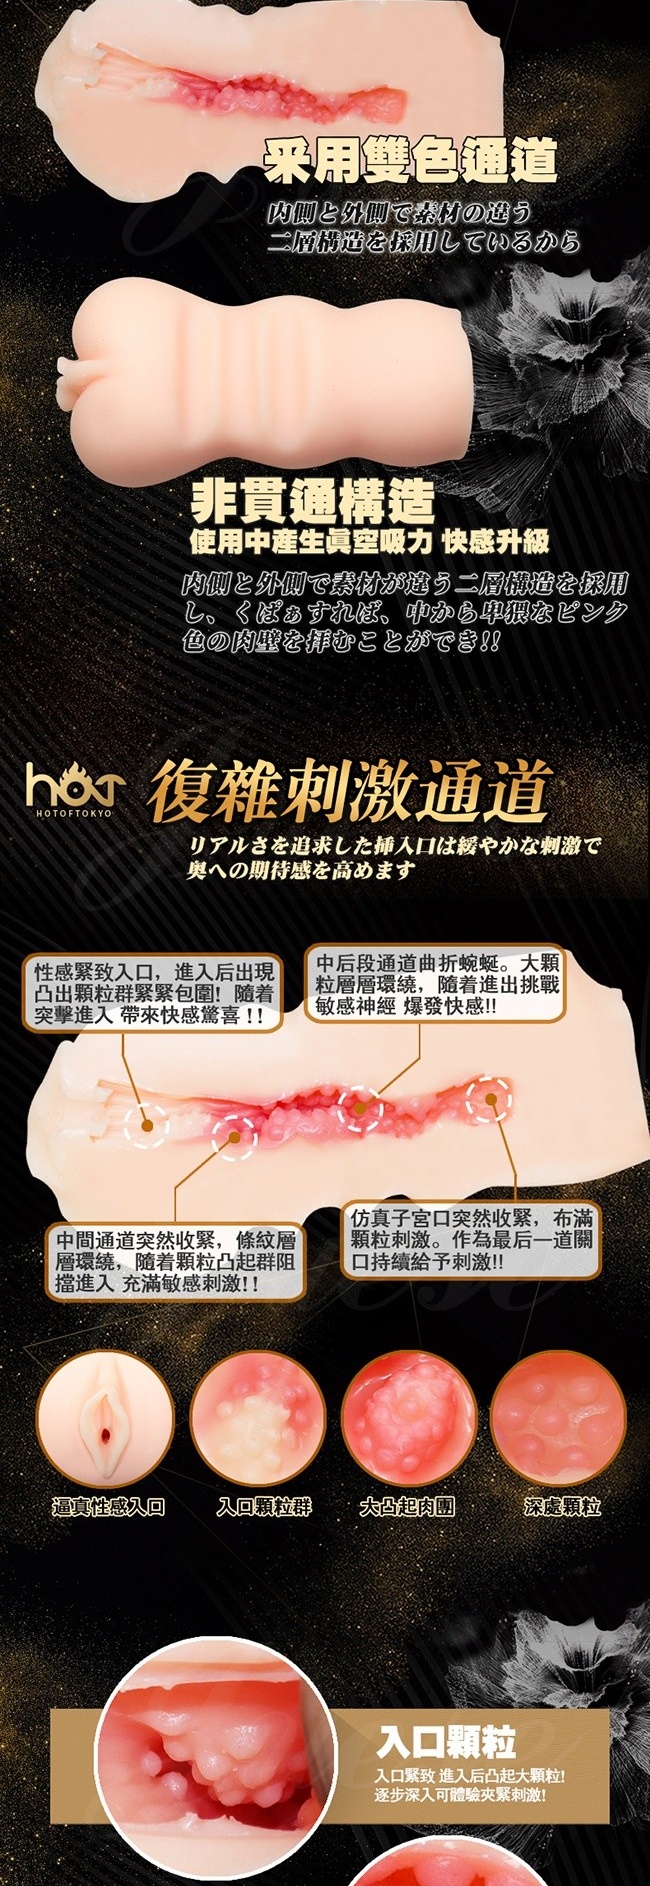 日本HOT-完全秘部 二層構造粉嫩夾吸自慰套-水野朝陽(特)